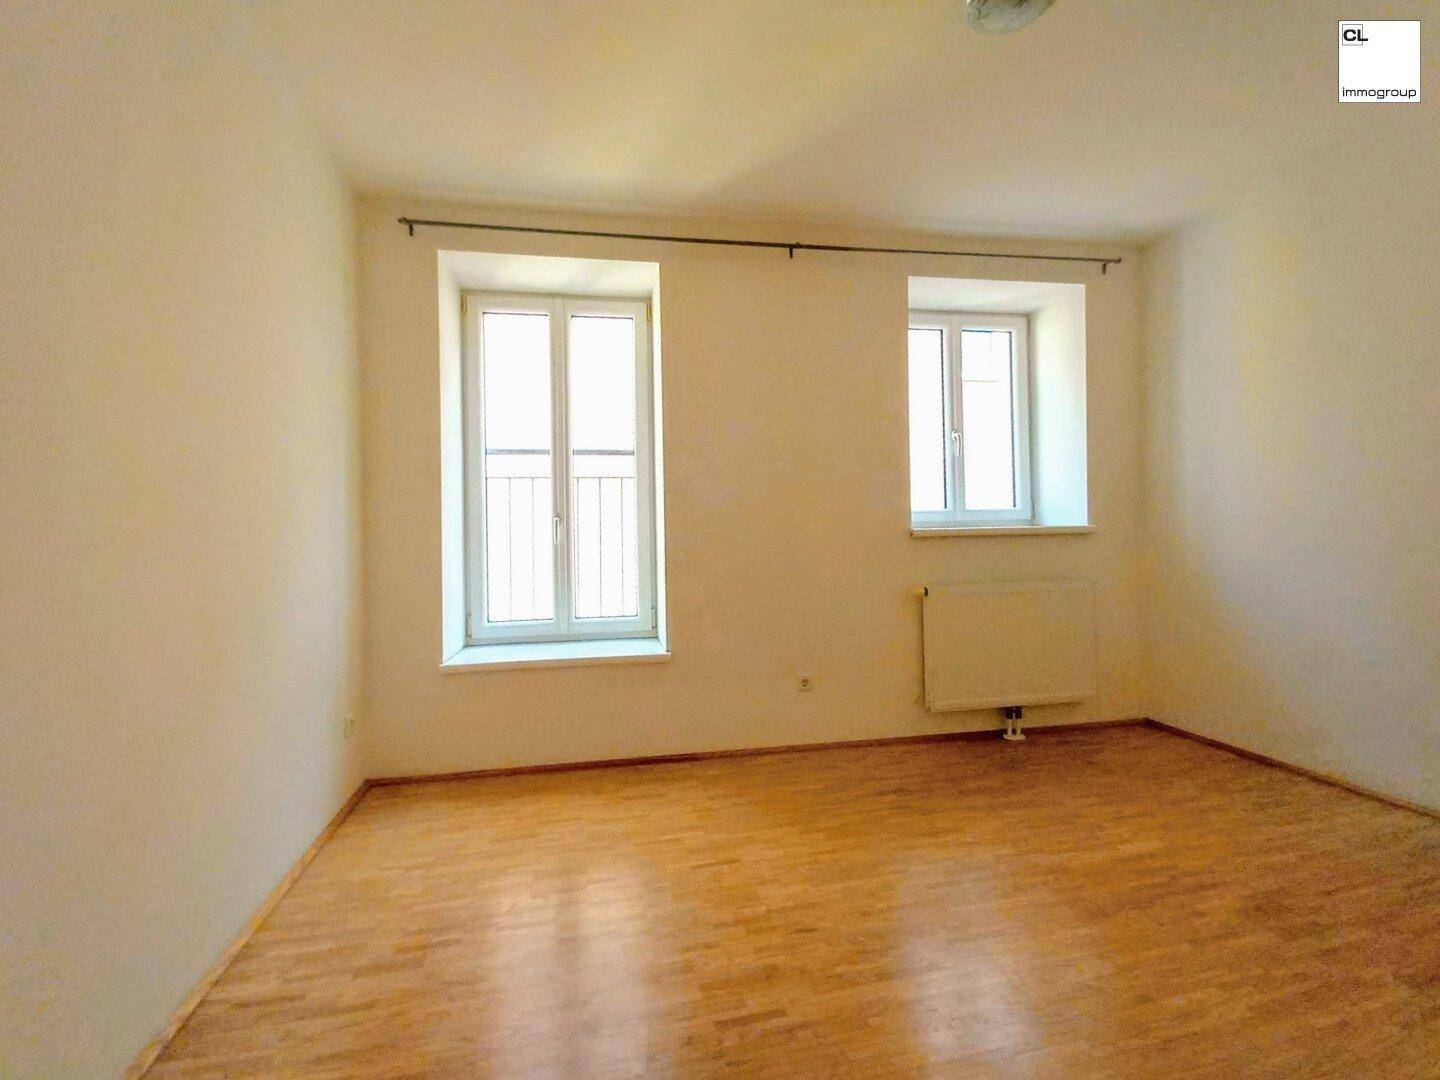 Helle, schöne und zentral gelegene 3 1/2 Zimmer-Wohnung in Herzen von Bad Ischl; 80 m²; nahe Kurpark, (c) CL-immogroup, www.CL-immogroup.at